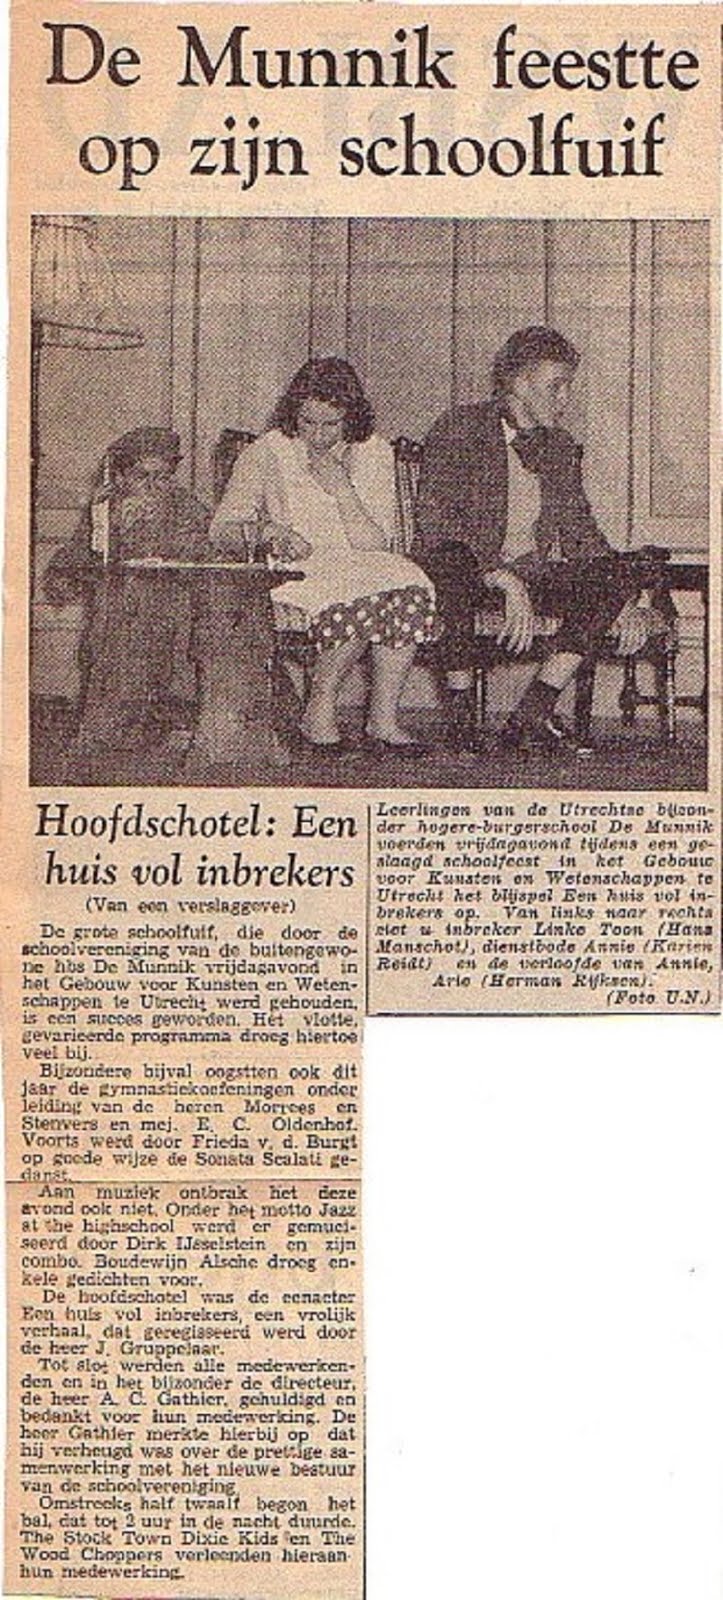 Schoolfuif op 14 februari 1958